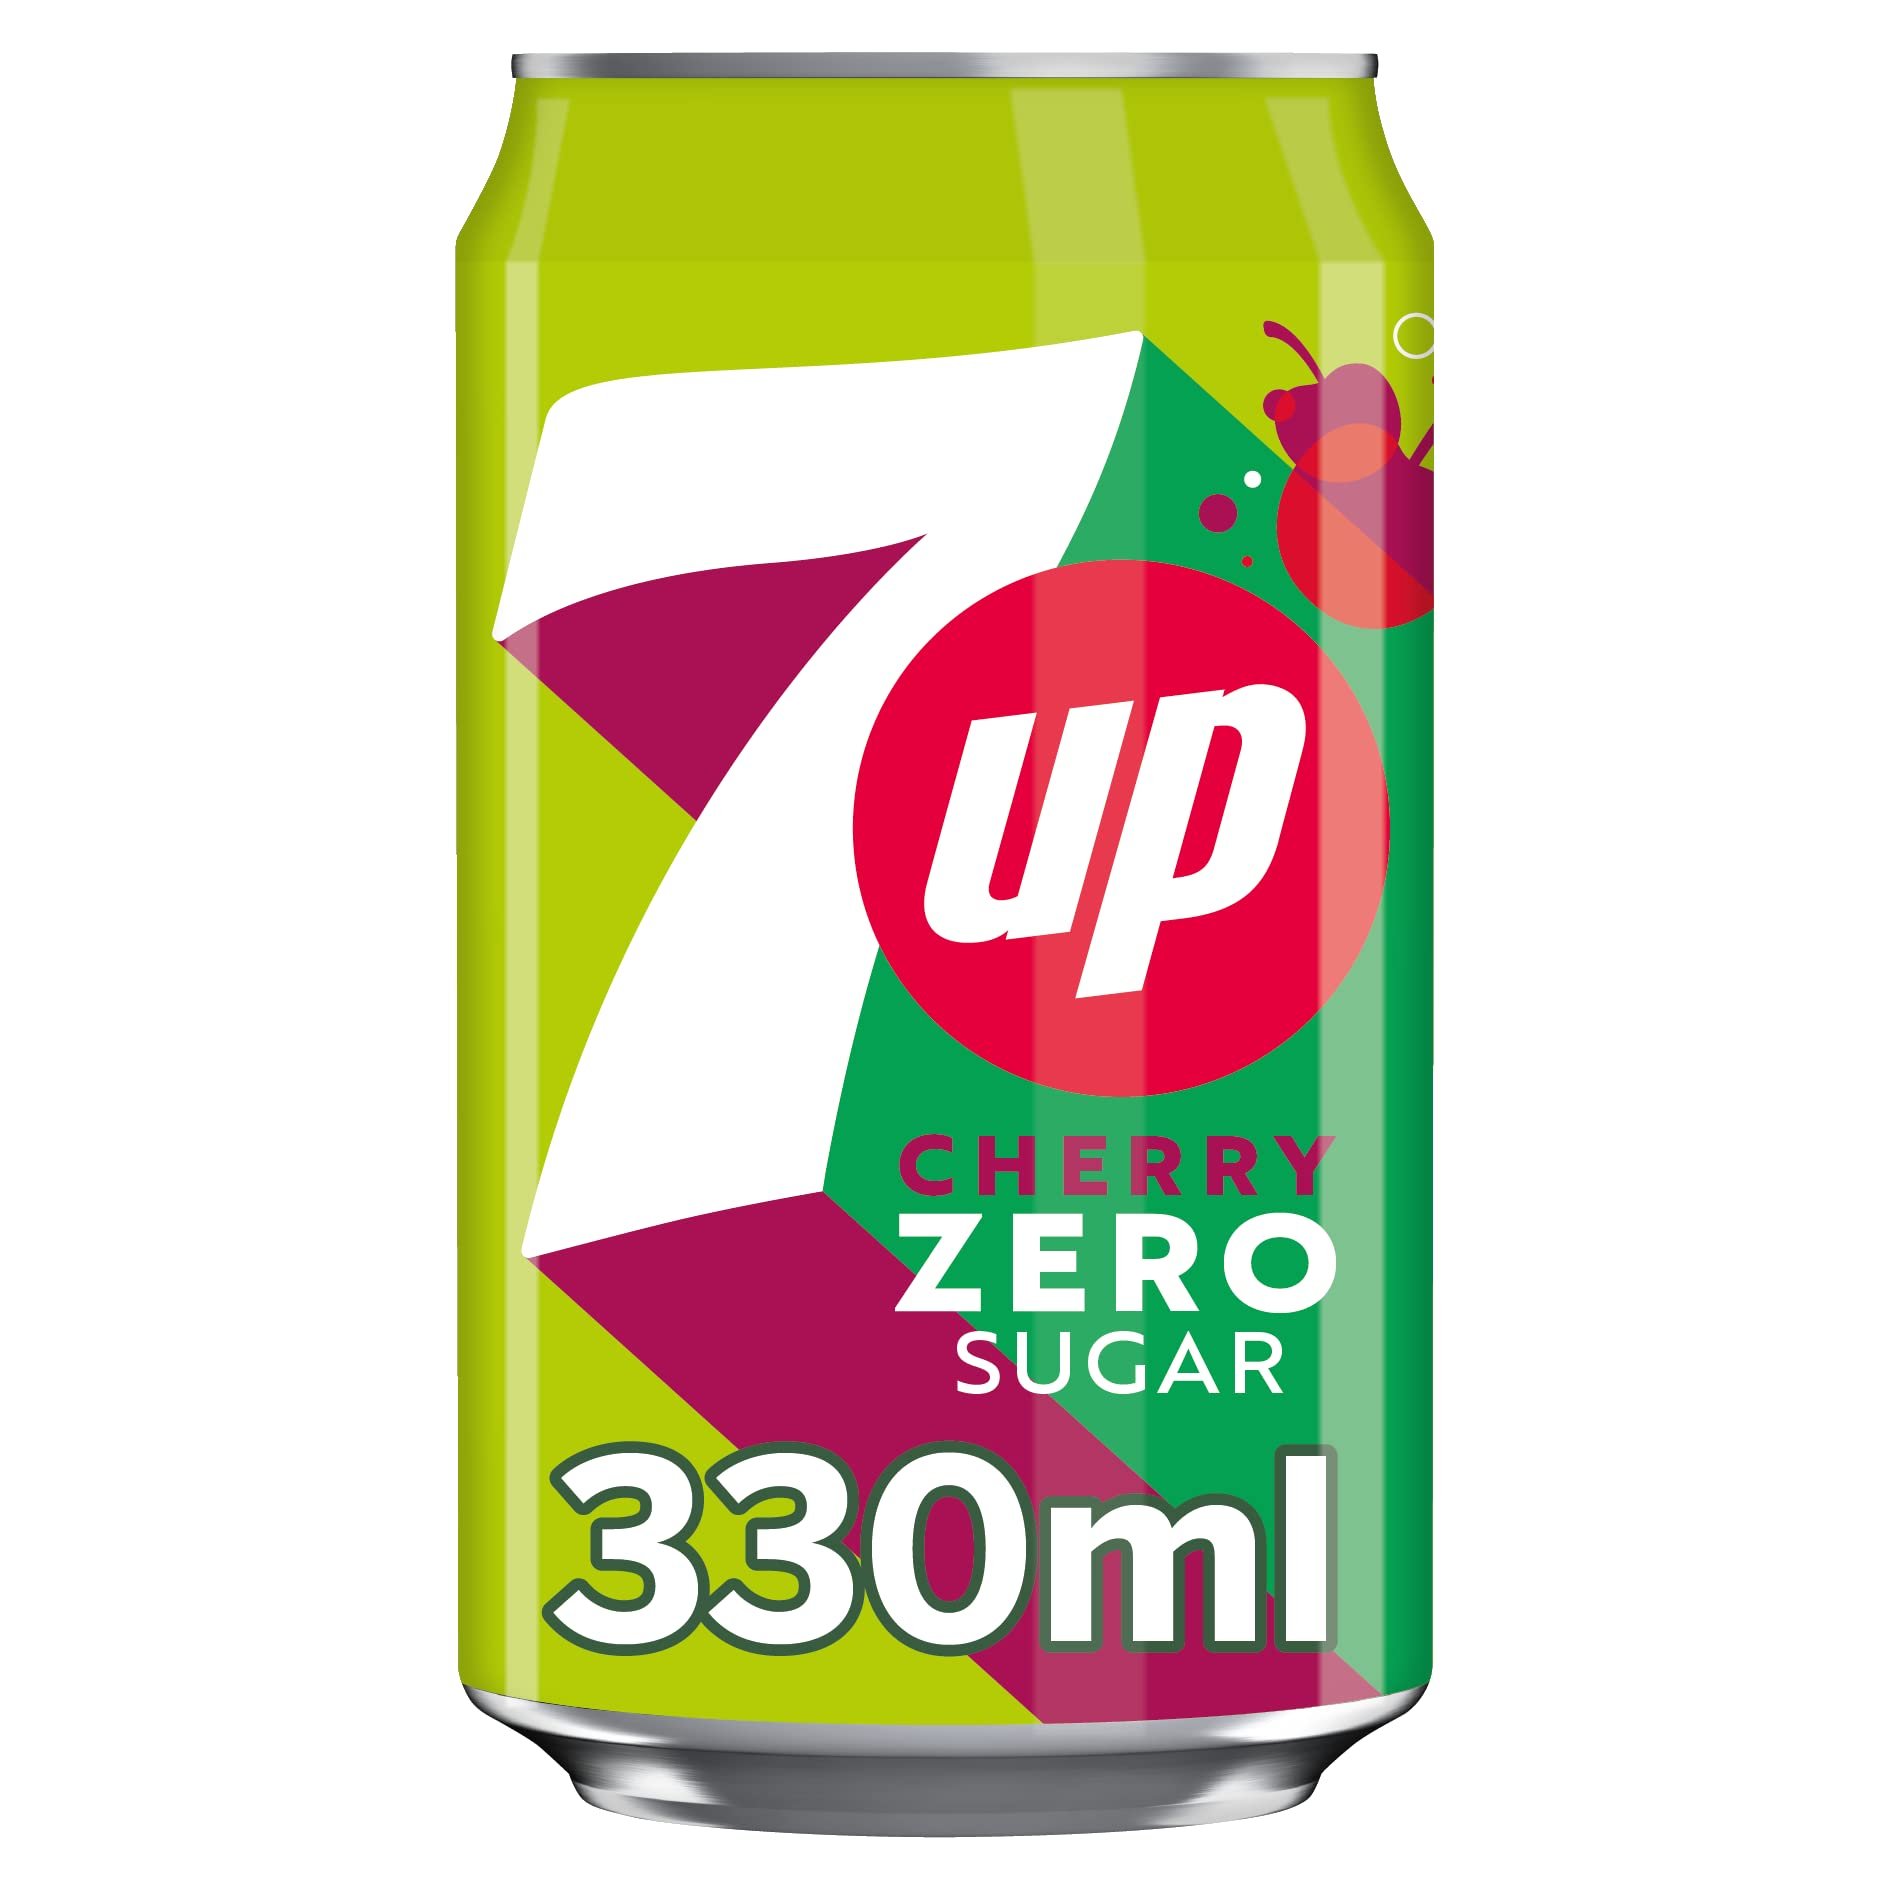 7up Cherry Zero Sugar 330ml – Kandy House